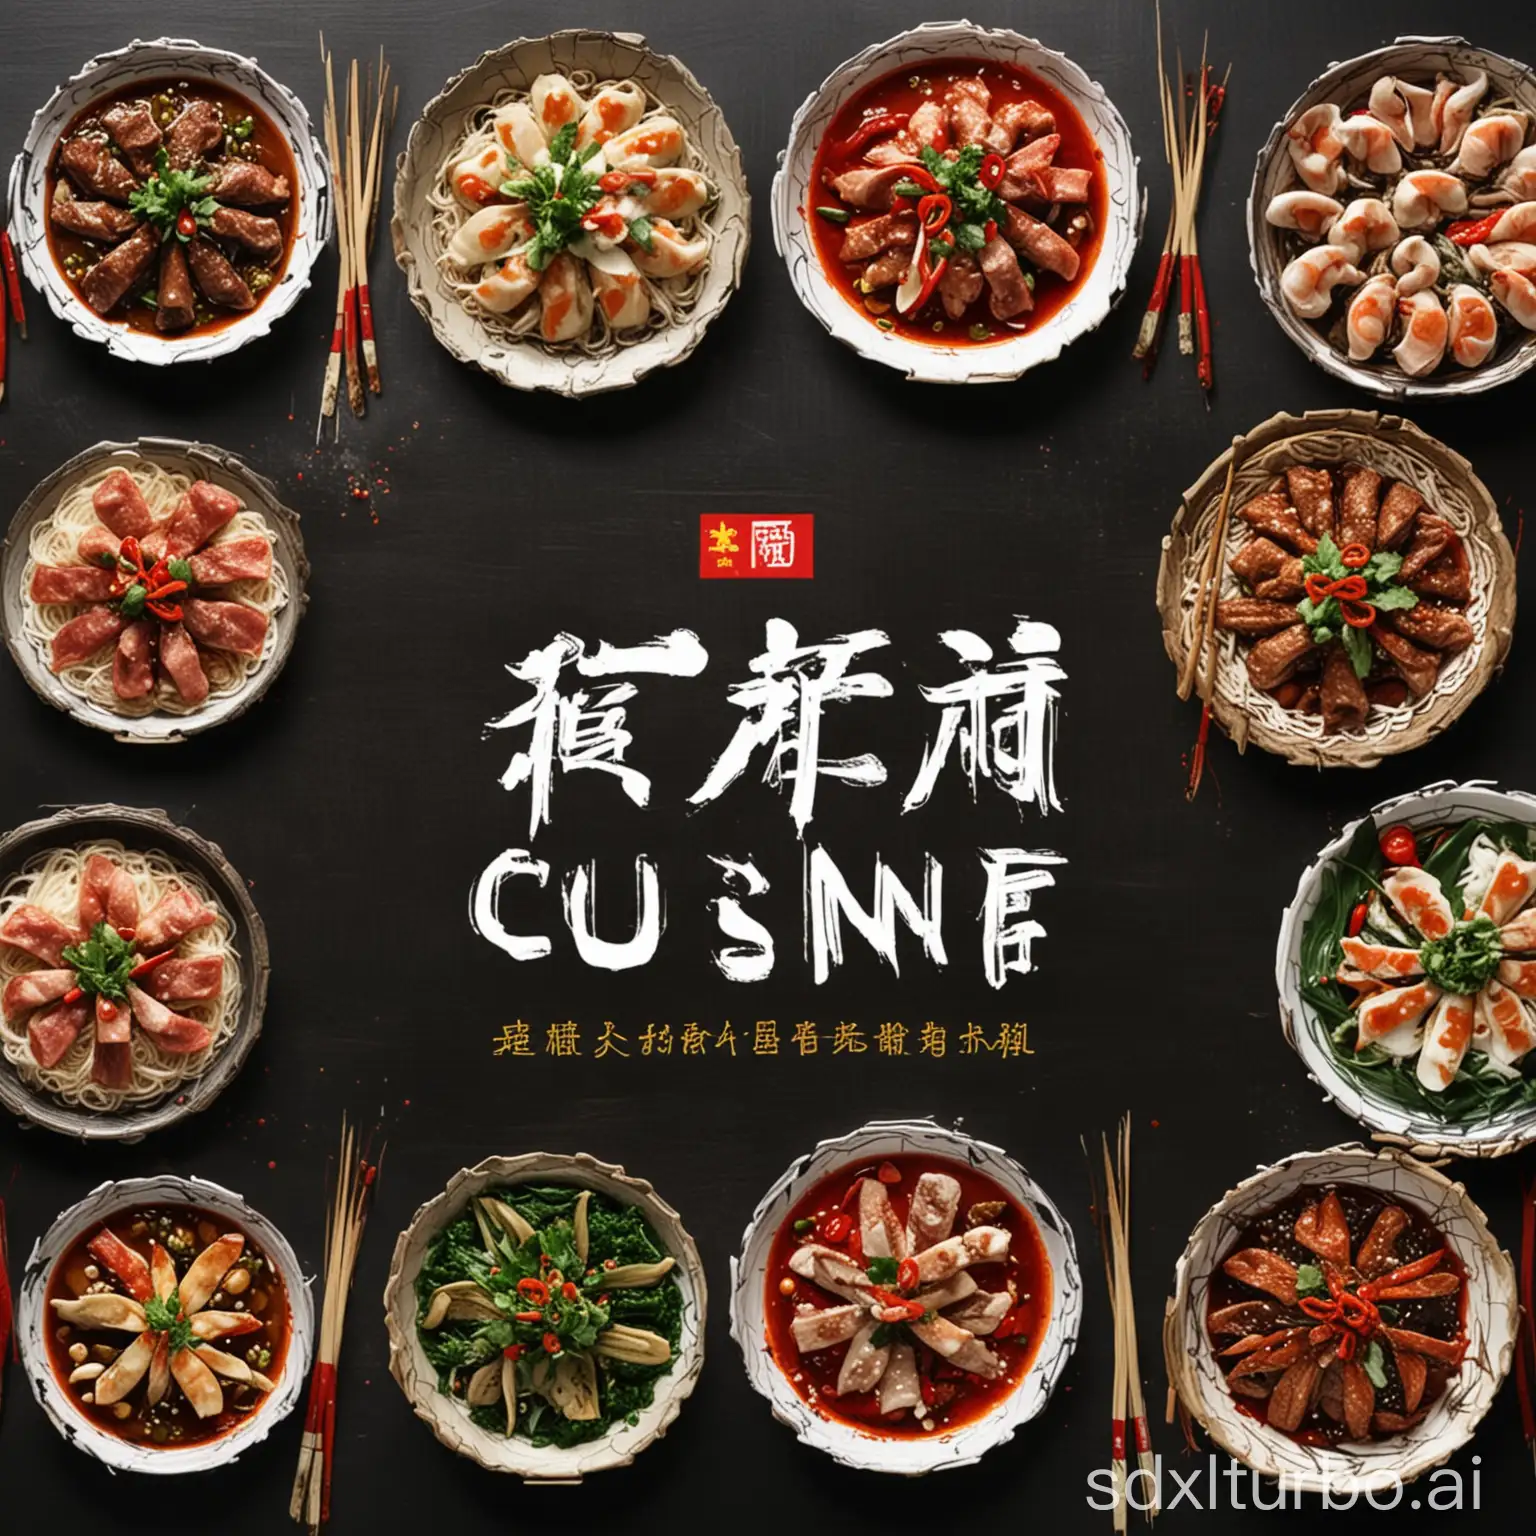 绘制一张中国宁海美食的图片作为视频封面